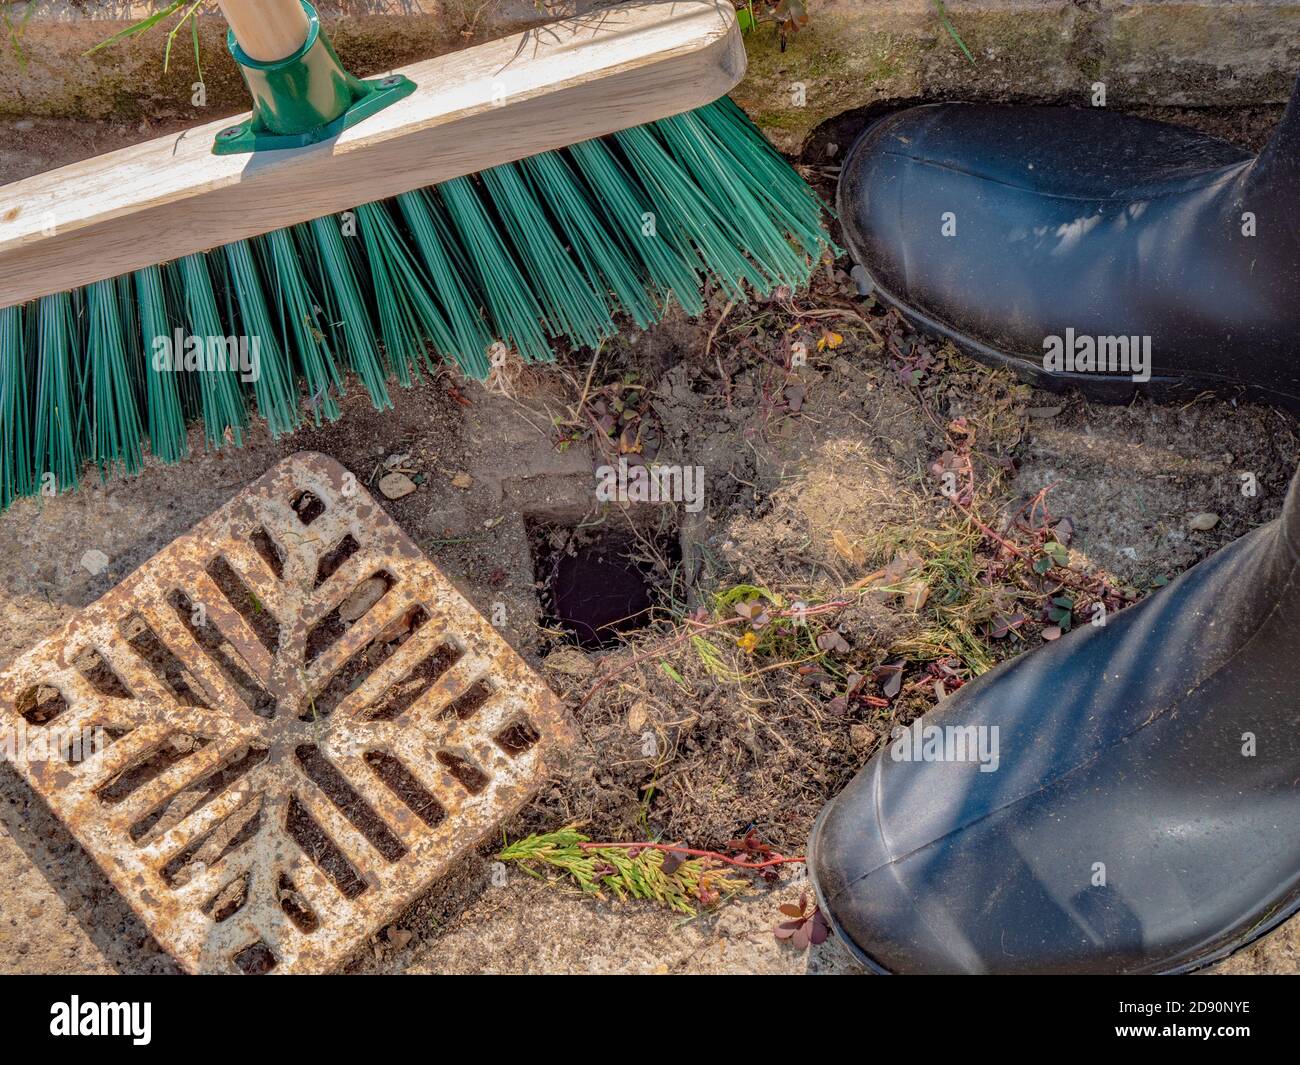 Una persona en wellington botas con una escoba de madera, con una pequeña cubierta de drenaje quitada, a punto de barrer los desechos acumulados alrededor de un agujero de remozo. Foto de stock